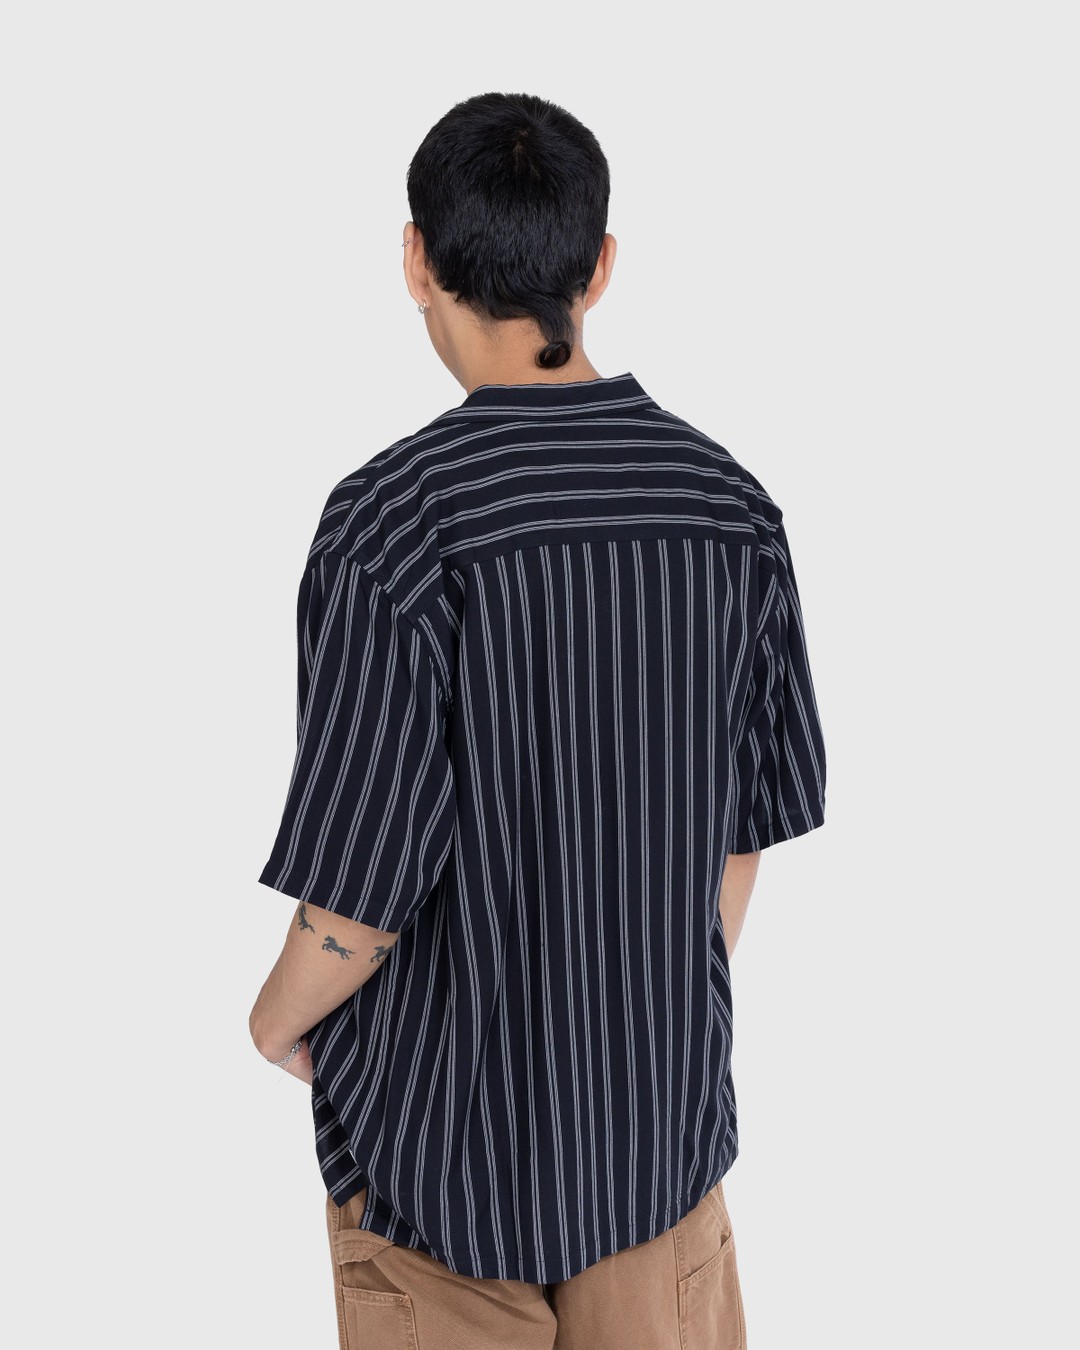 Carhartt WIP – Reyes Stripe Shirt Black - Shirts - Black - Image 4